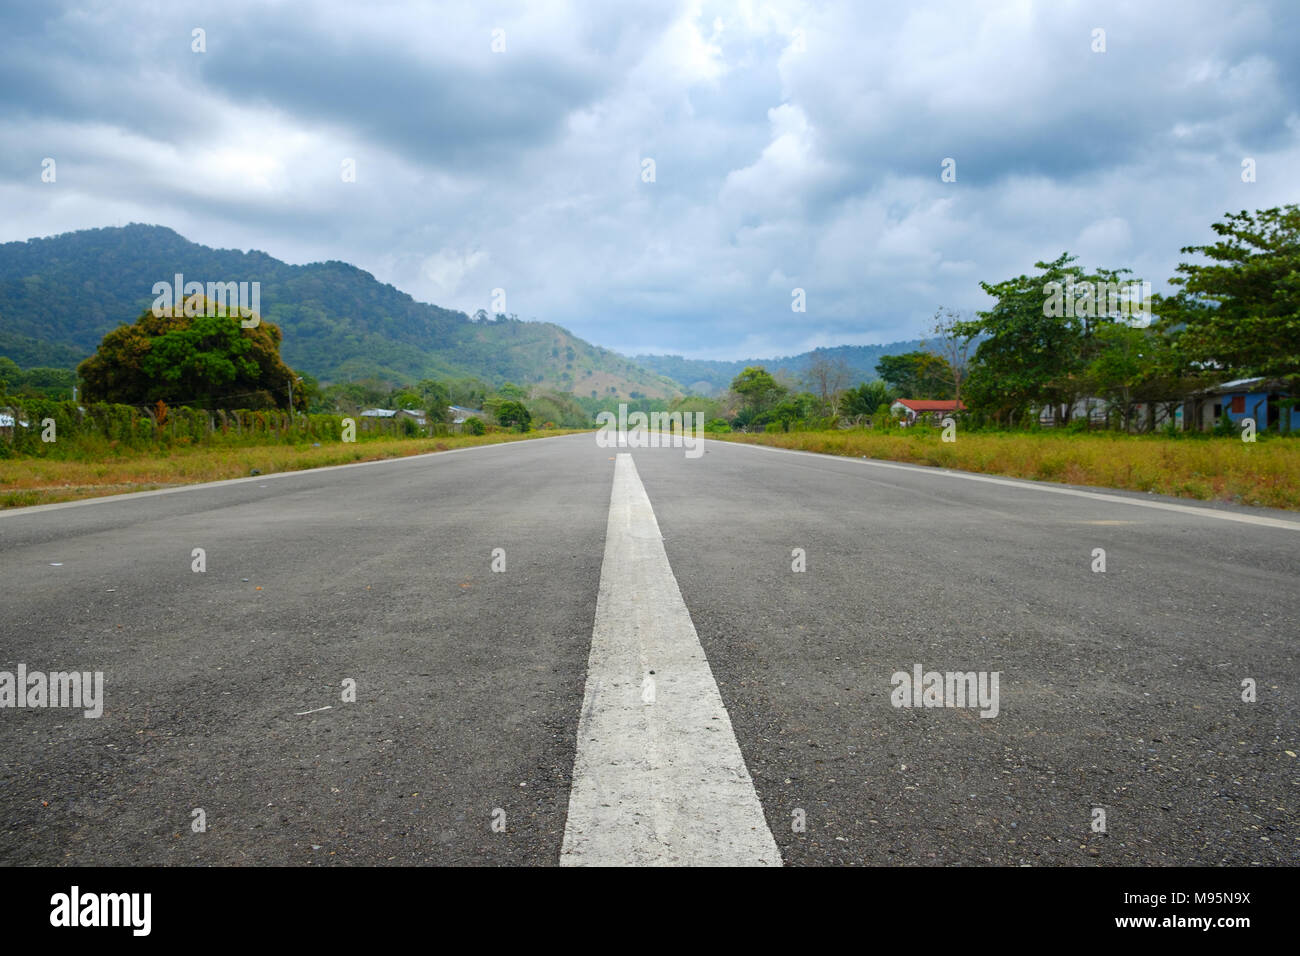 Gerade asphaltierte Straße in ländlichen Landschaft - leere Landebahn - Stockfoto